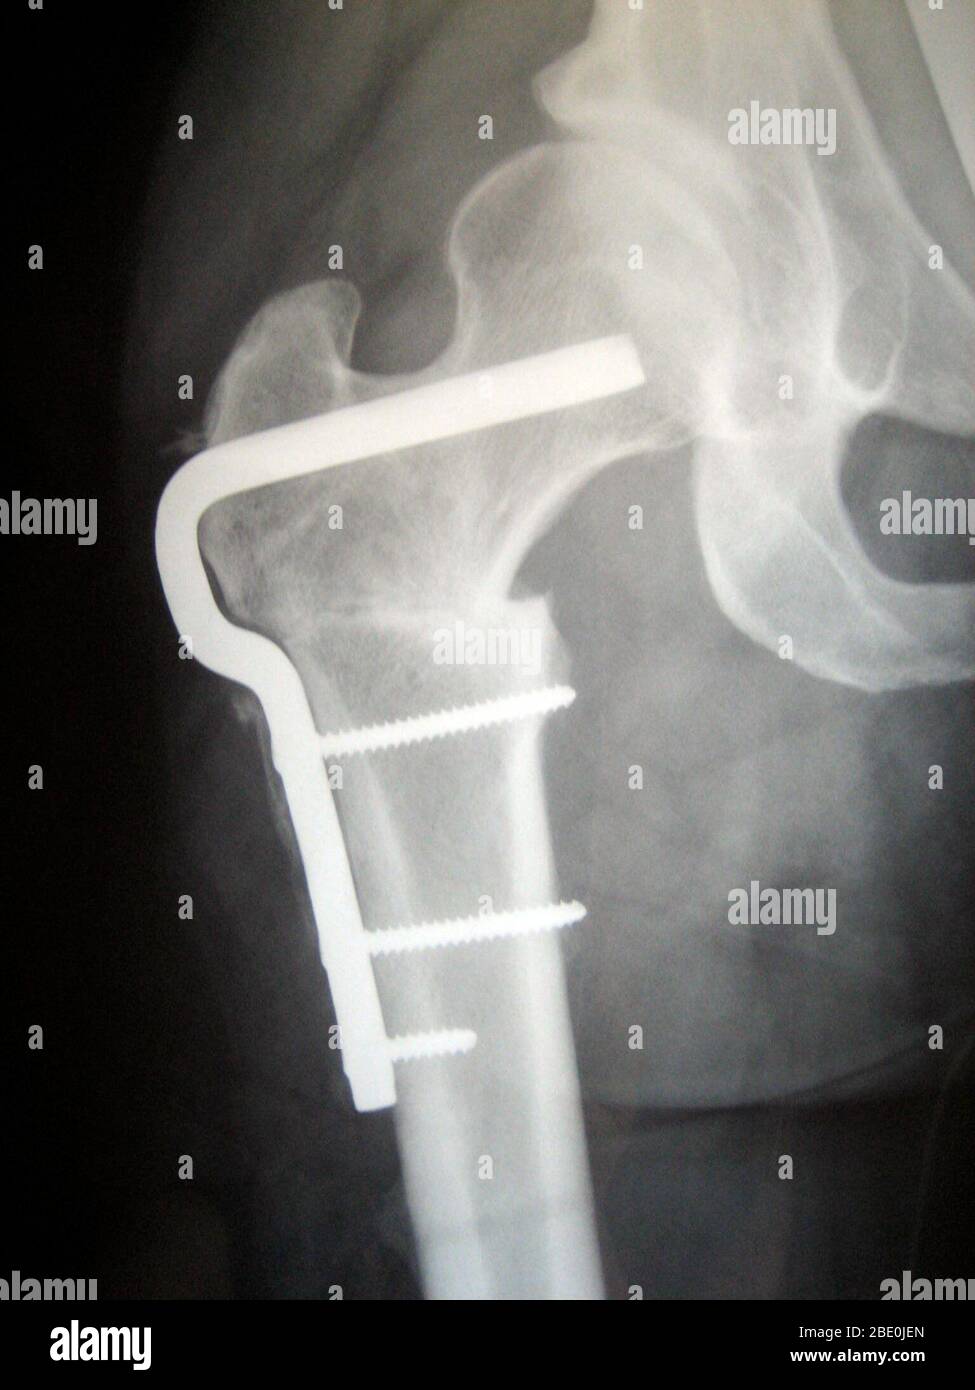 Radiografía de la osteotomía femoral hardware para corregir la rotación femoral causada por una displasia de la cadera. Esta radiografía muestra la cadera derecha en un paciente femenino al principio de la década de los treinta. Foto de stock